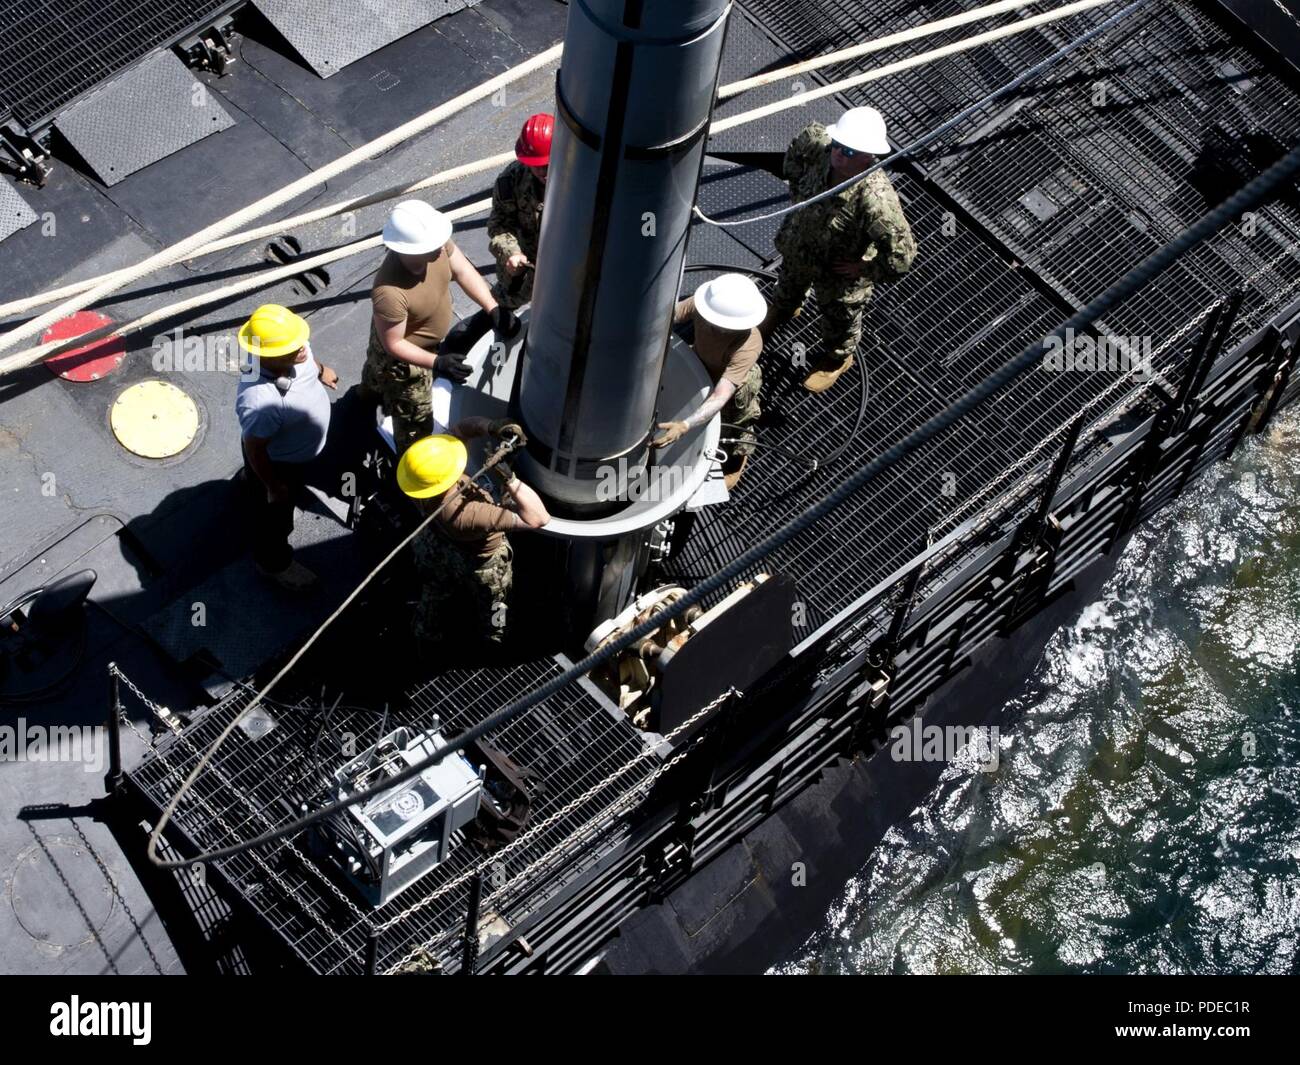 PEARL HARBOR, Hawaii (20 mai 2018) -- la classe Los Angeles sous-marin d'attaque rapide USS Santa Fe (SSN 763) reçoit une torpille du sous-marin USS Emory S. Land d'offres (comme 39) pendant une opération de démonstration AJAX, le 20 mai 2018. L'Emory S. Land est en ce moment sur un service escale à Pearl Harbor, Hawaii. L'Emory S. Land est homeported in Apra Harbour, Guam et offre des services de maintenance, les services de l'hôtel et un soutien logistique à des sous-marins et navires de surface int il flotte des États-Unis 5e et 7e secteurs d'opération. Banque D'Images